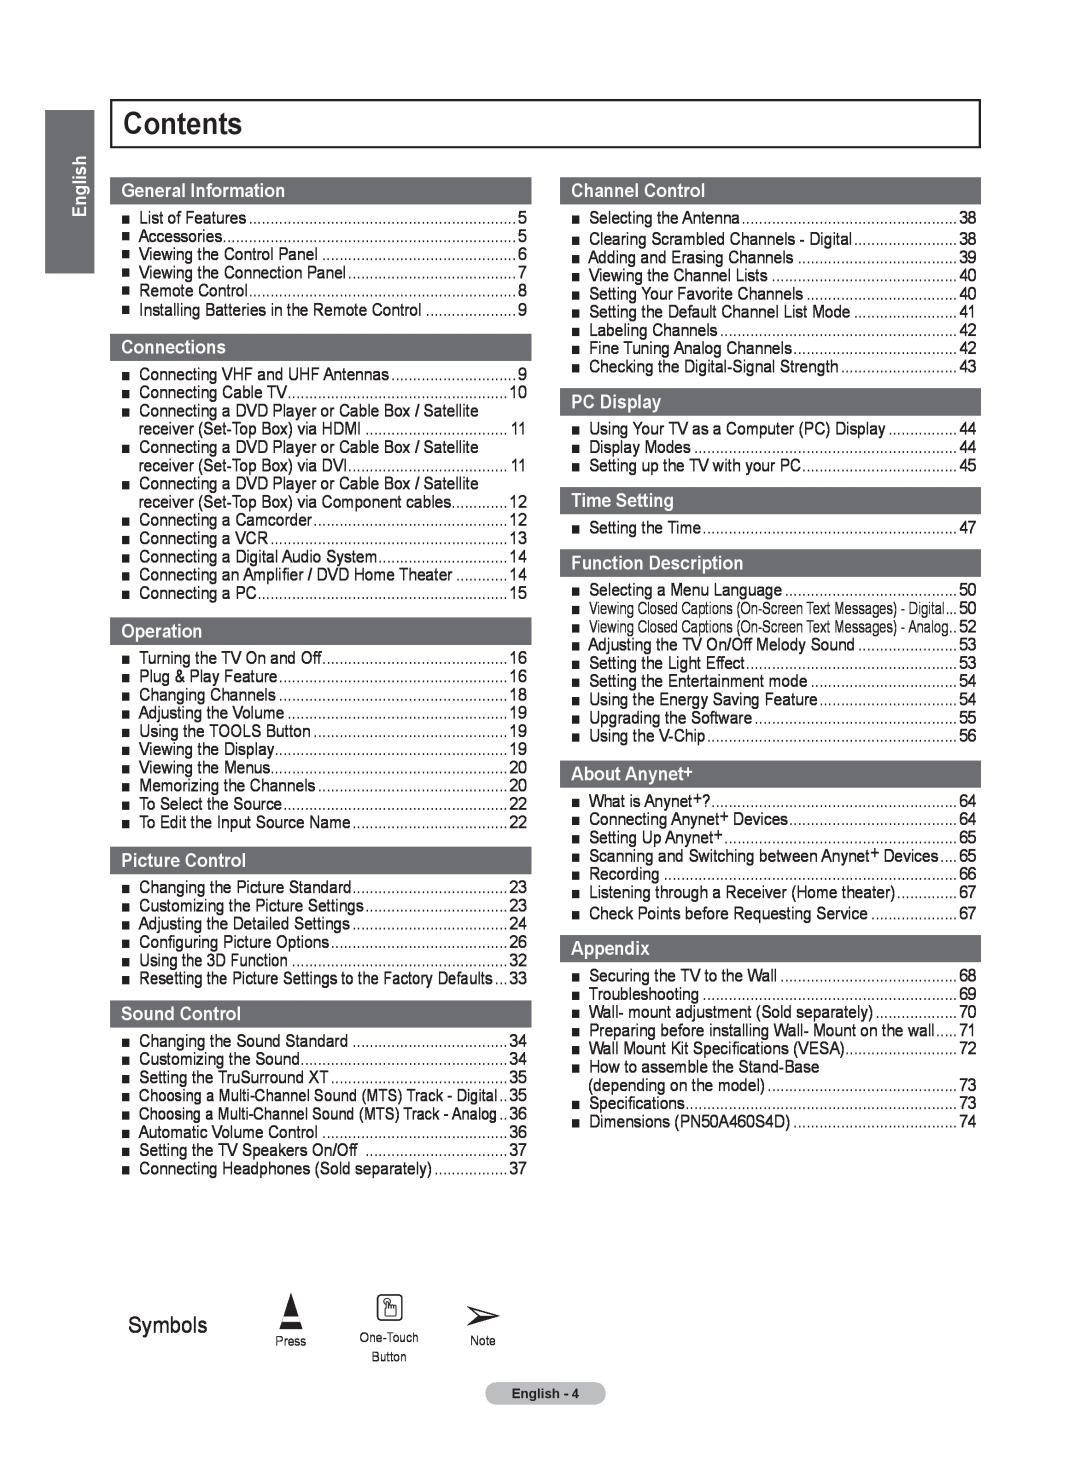 Samsung 460 user manual Contents, Symbols 